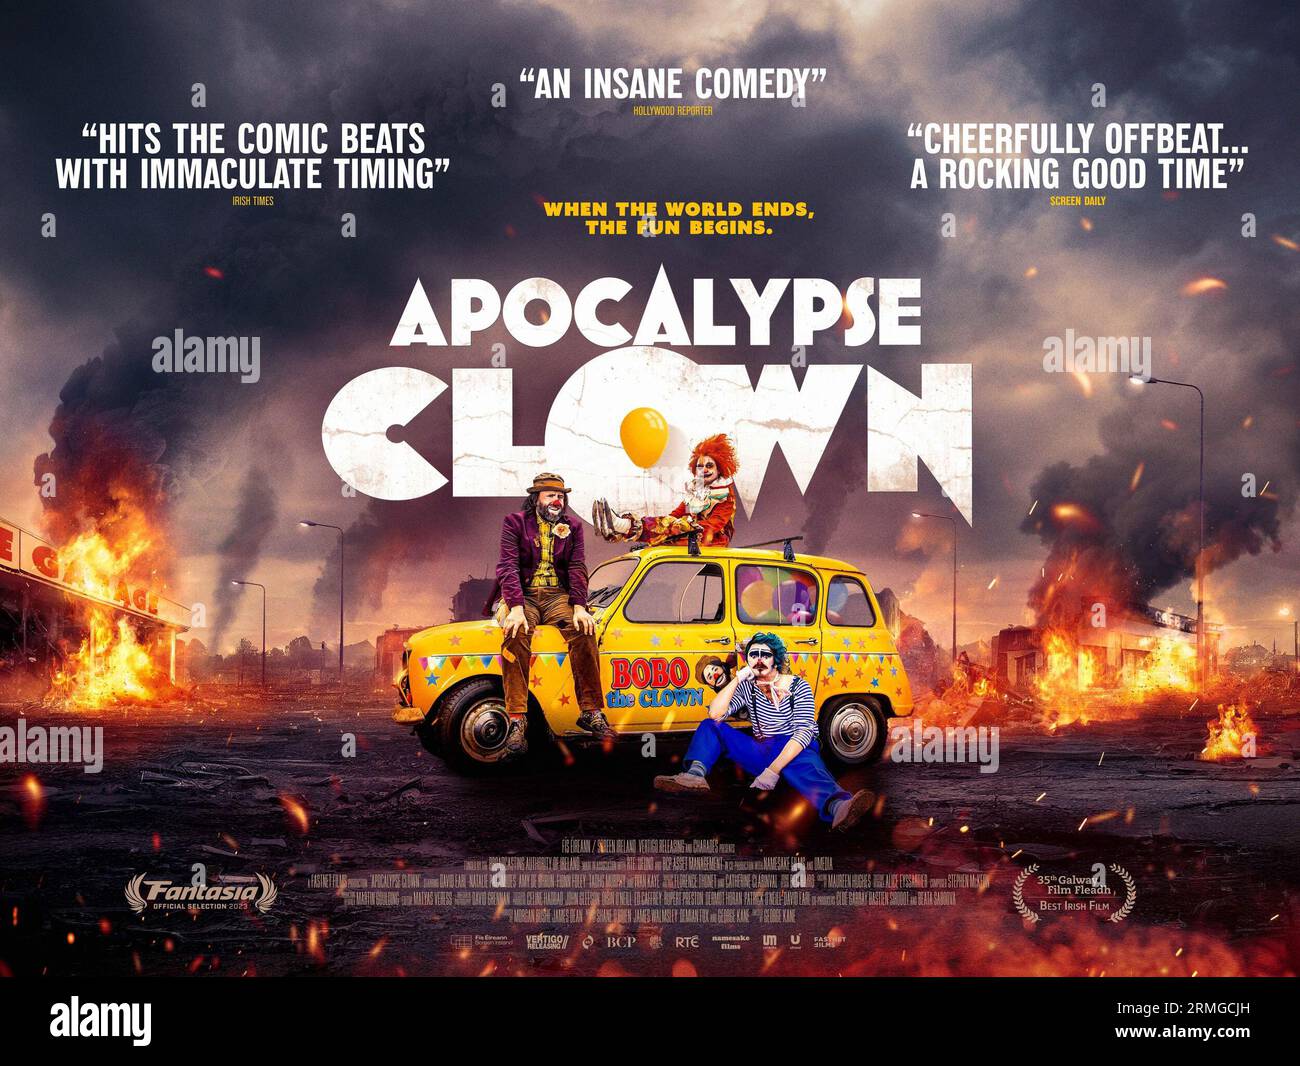 Apocalypse Clown poster Stock Photo